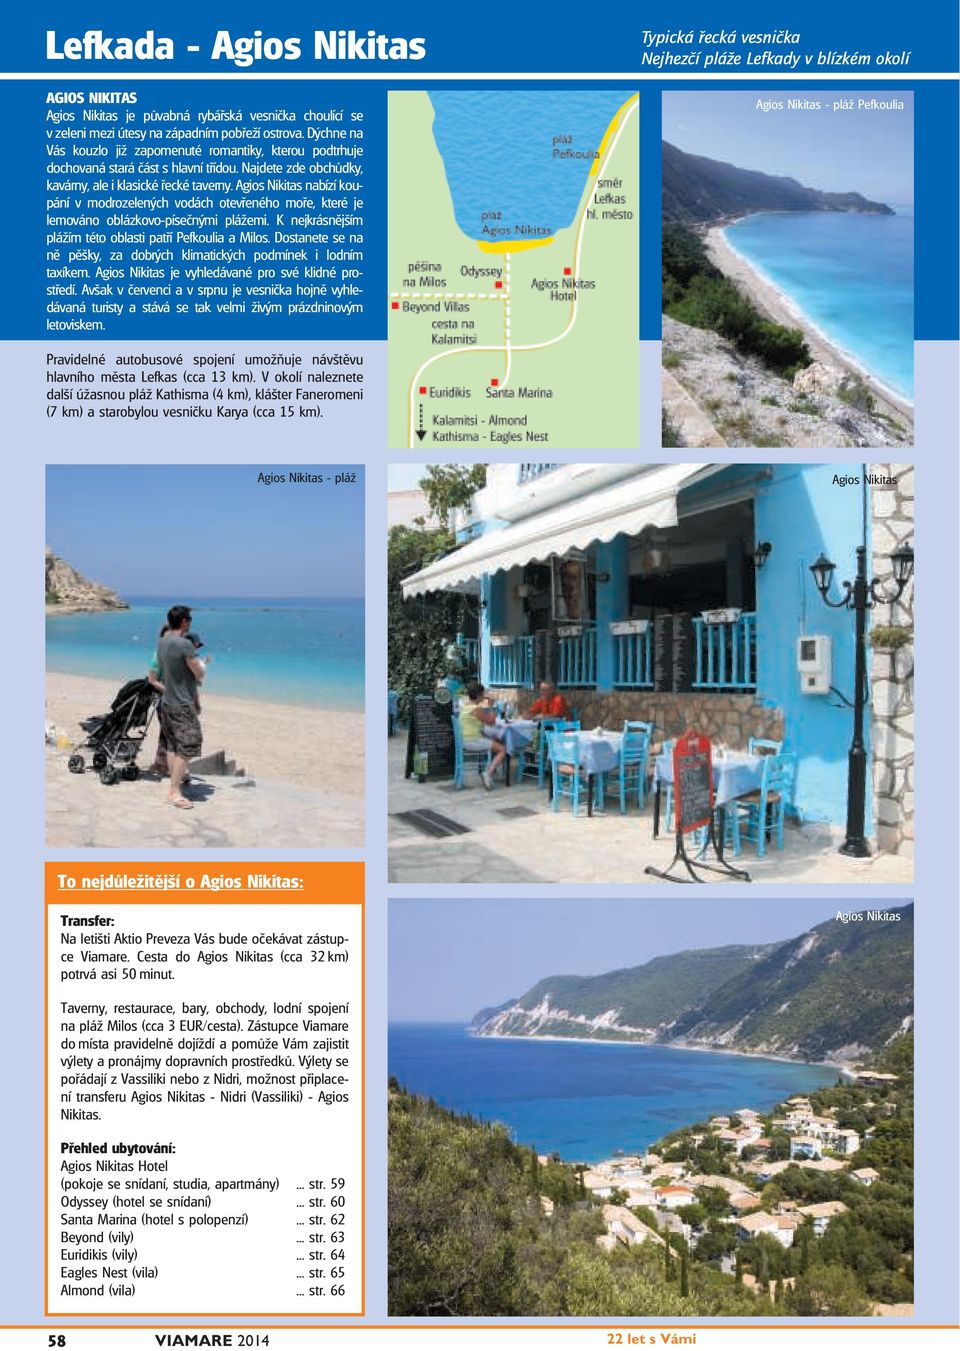 Agios Nikitas nabízí koupání v modrozelených vodách otevřeného moře, které je lemováno oblázkovo-písečnými plážemi. K nejkrásnějším plážím této oblasti patří Pefkoulia a Milos.